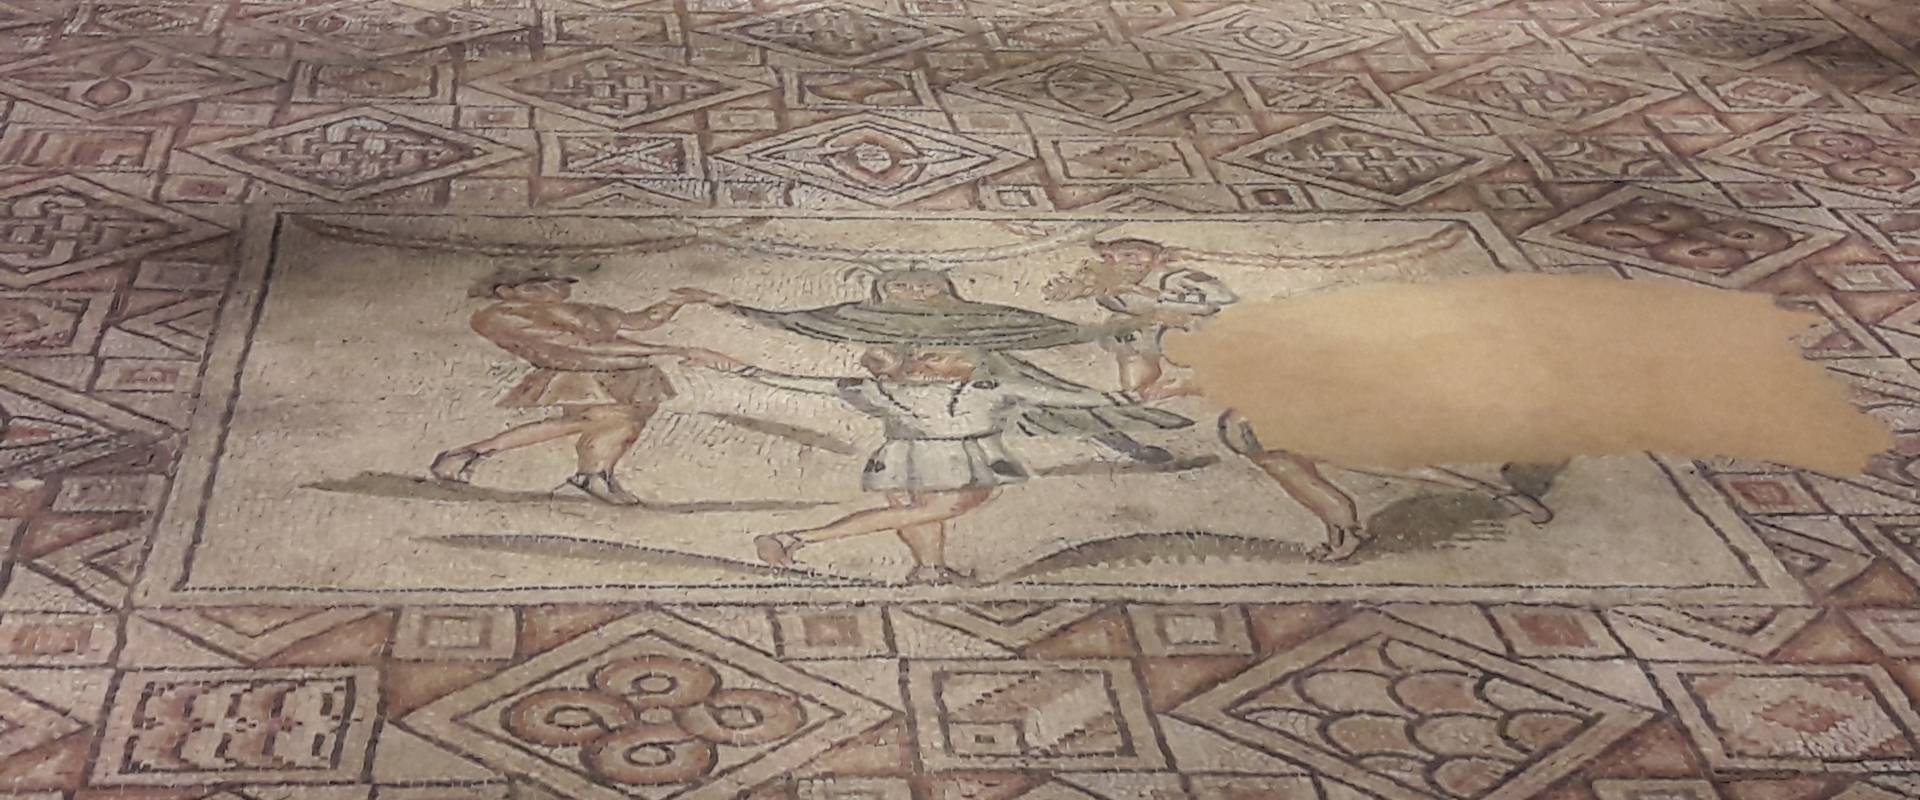 Ravenna - Domus tappeti di pietra - Mosaico centrale (ricostruzione) foto di Ysogo